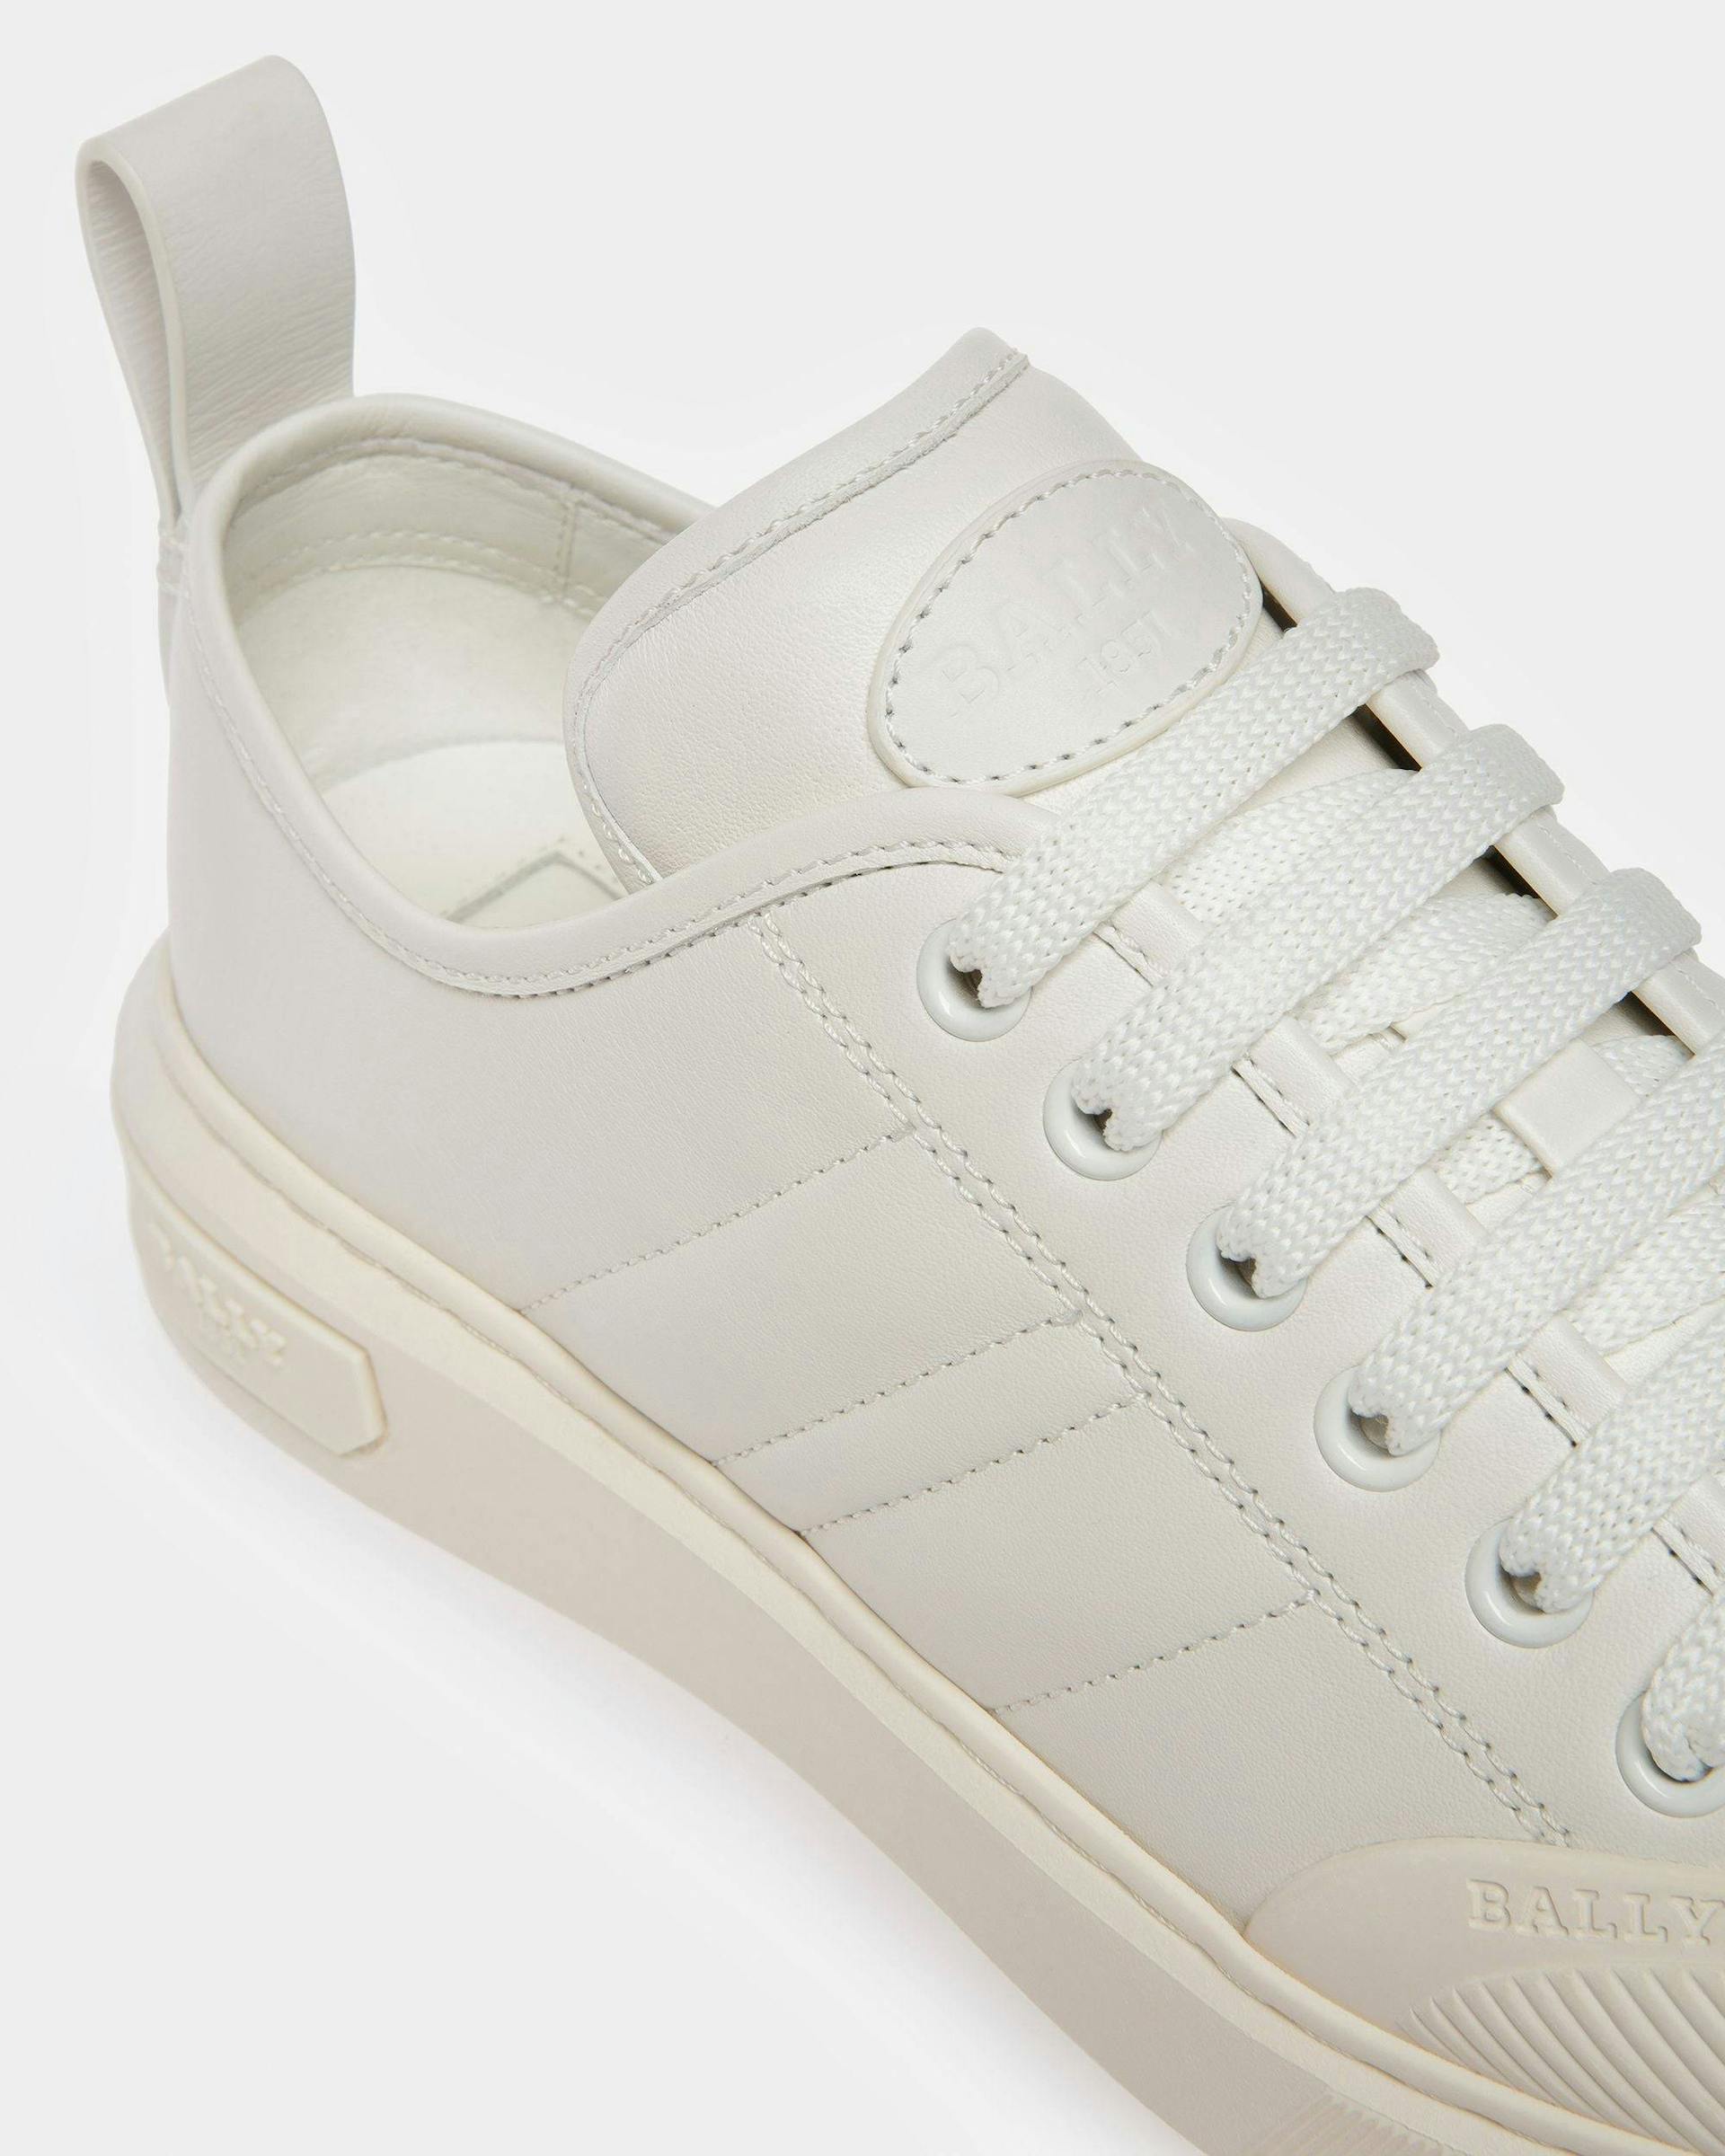 Medyn Leather Sneakers In White - Women's - Bally - 06